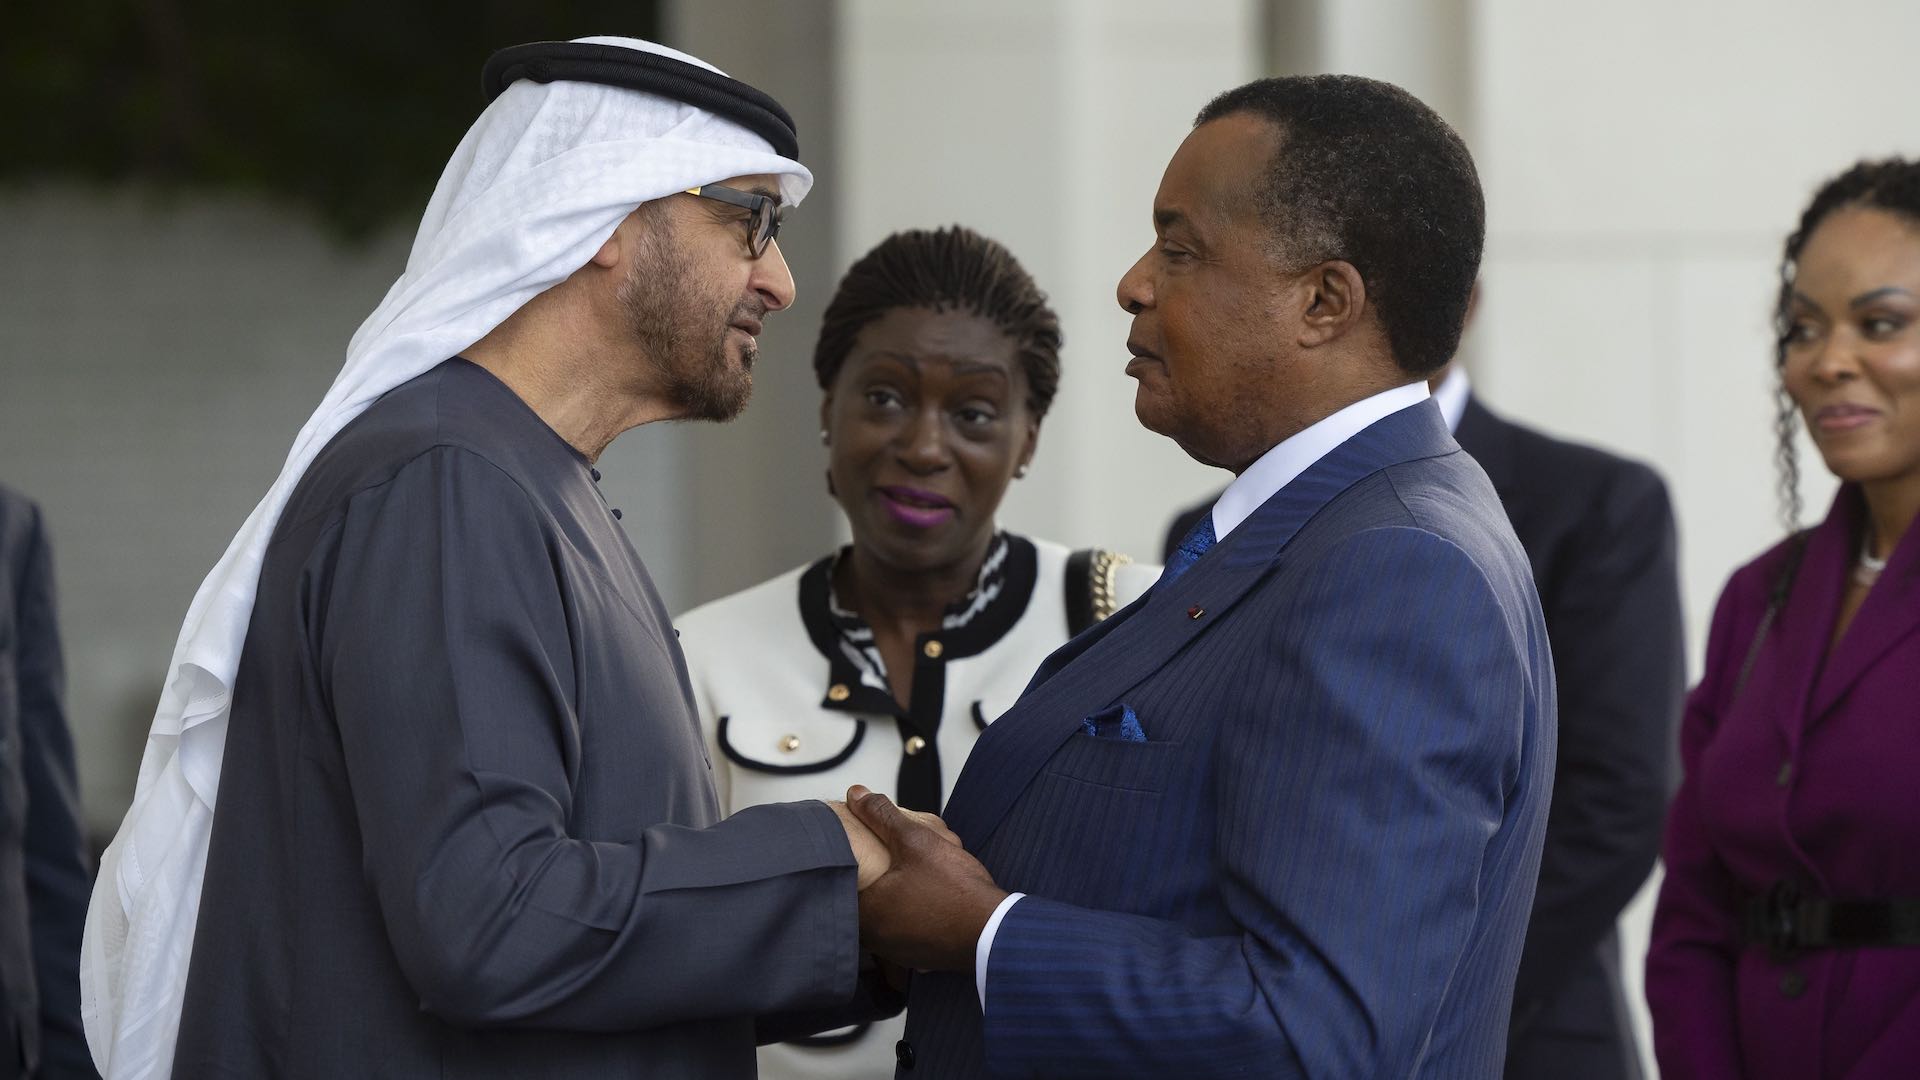 متحدہ عرب امارات کے صدر نے کانگو برازاویل کے صدر کا خیرمقدم کیا۔